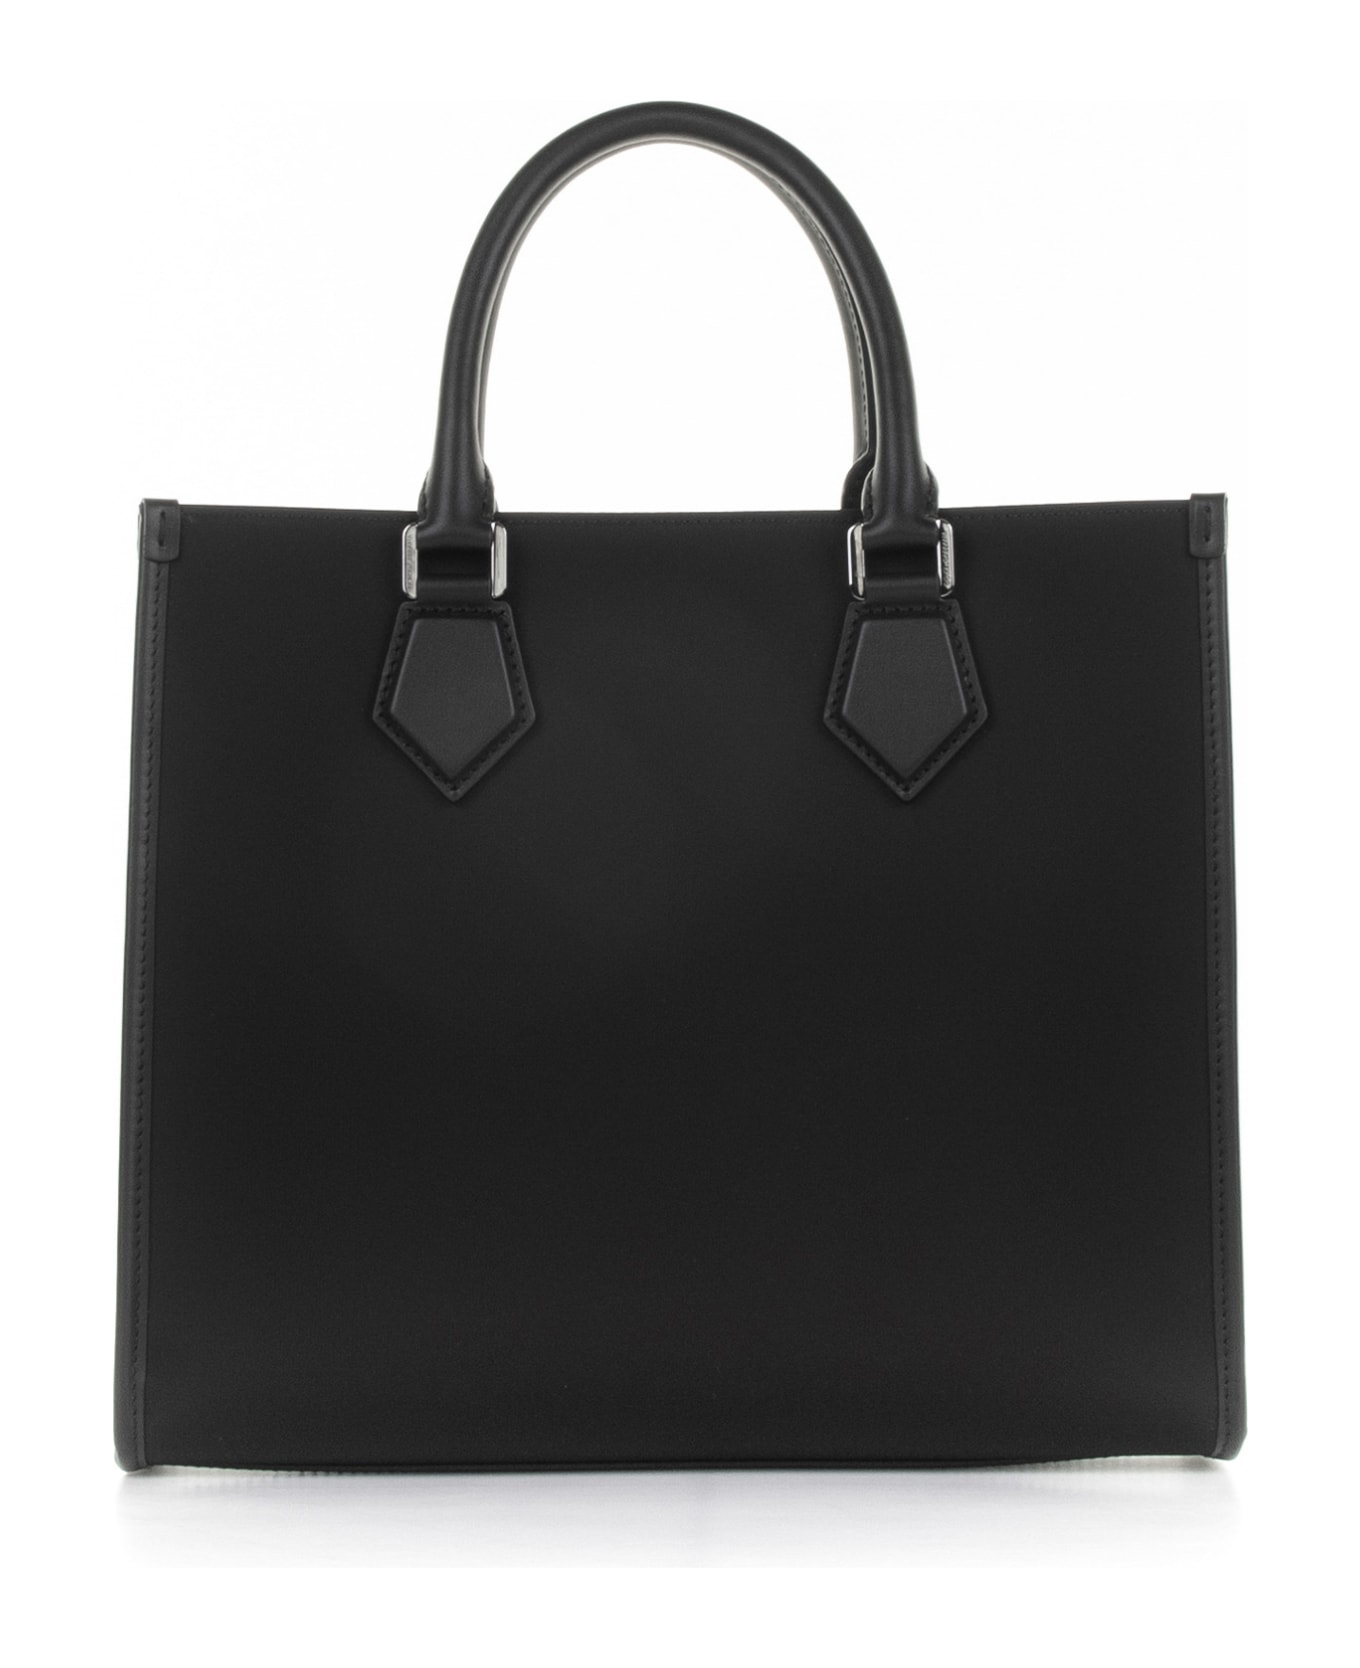 Dolce & Gabbana Large Shopping Bag With Rubberized Logo - NERO